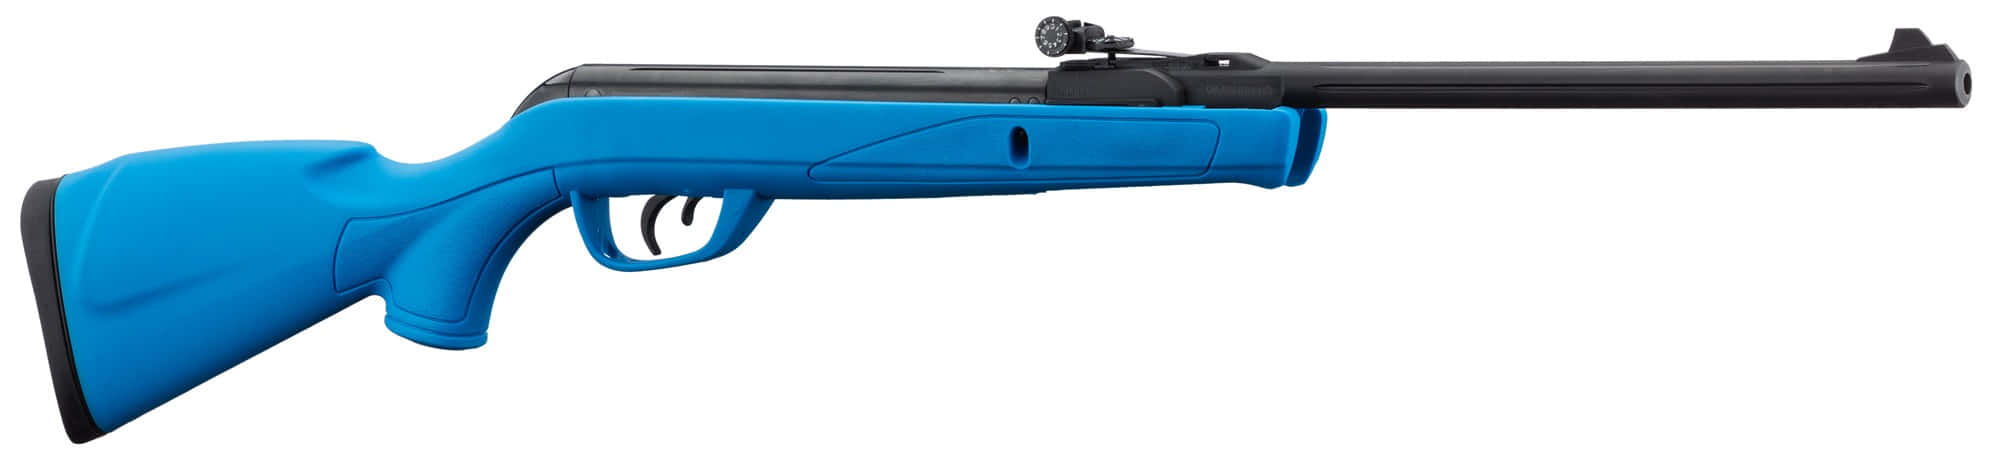 CA1137-4 Carabine Gamo Delta Bleu synth&eacute;tique 7,5 joules cal. 4,5 mm - CA1139